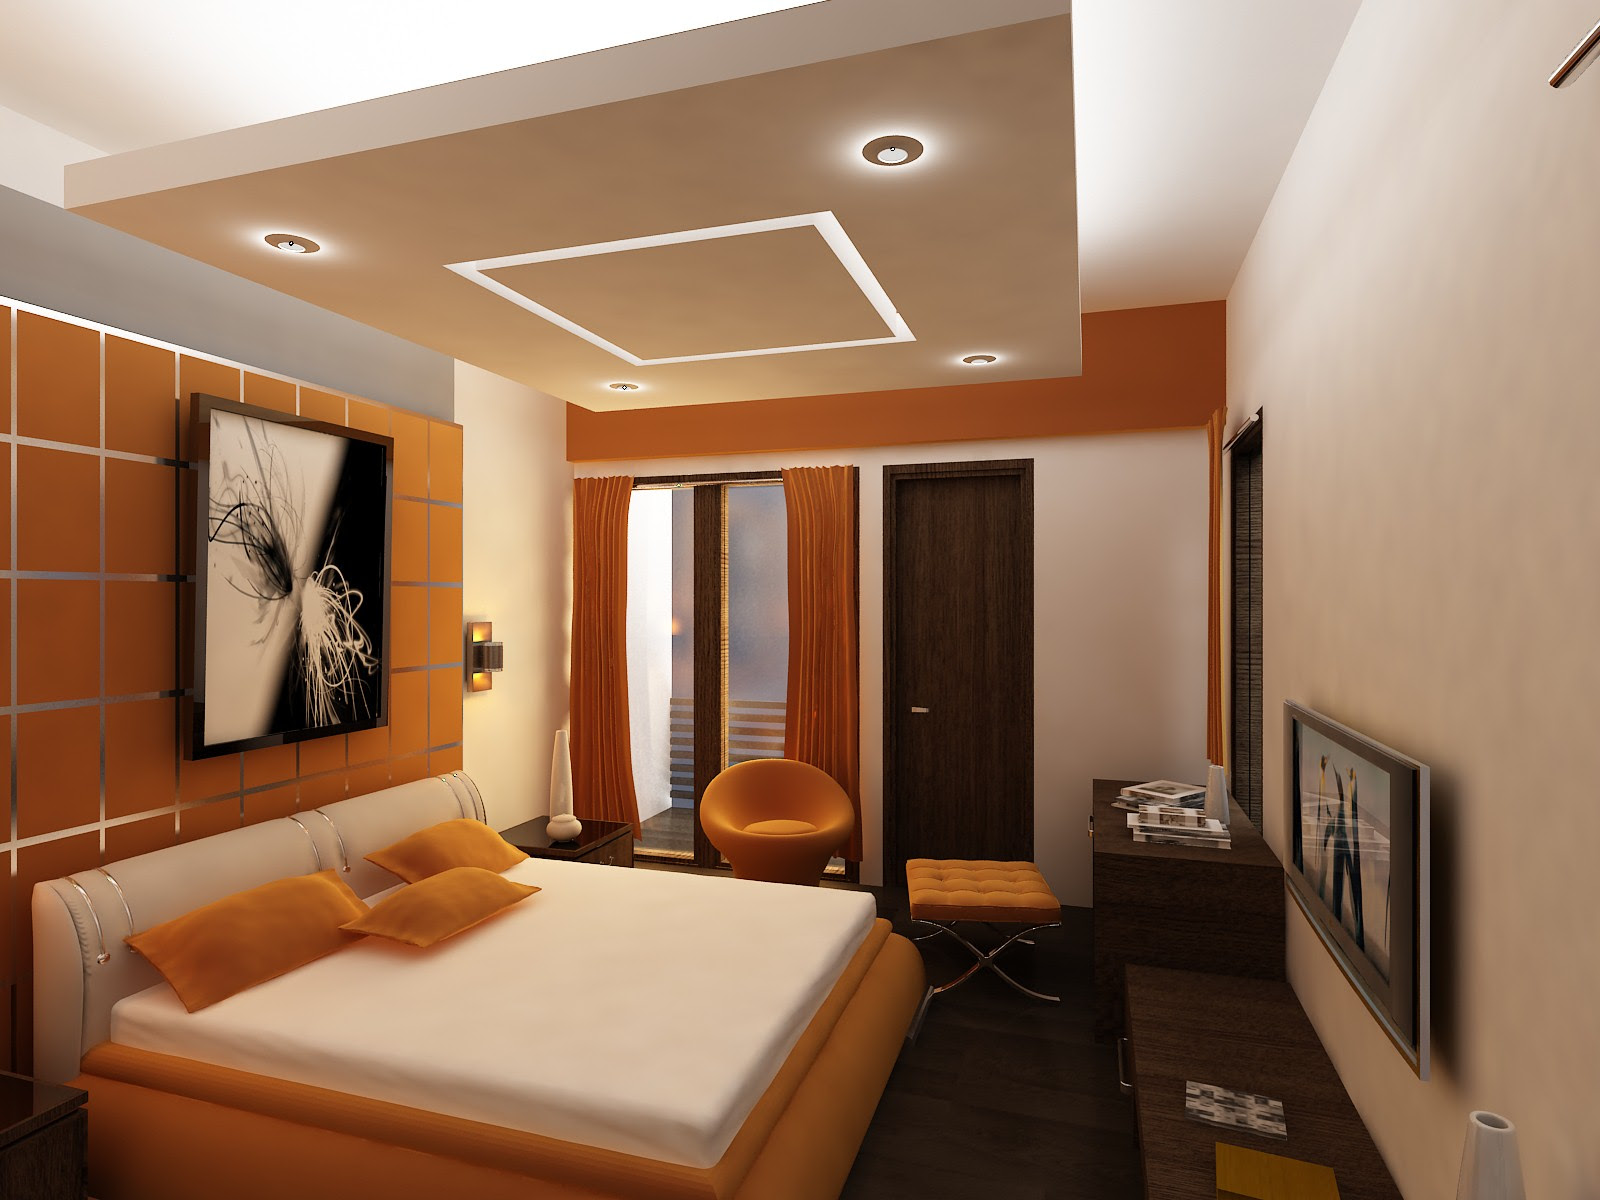 Contoh Desain kamar Tidur Hotel Minimalis Mewah ~ Gambar Rumah Idaman